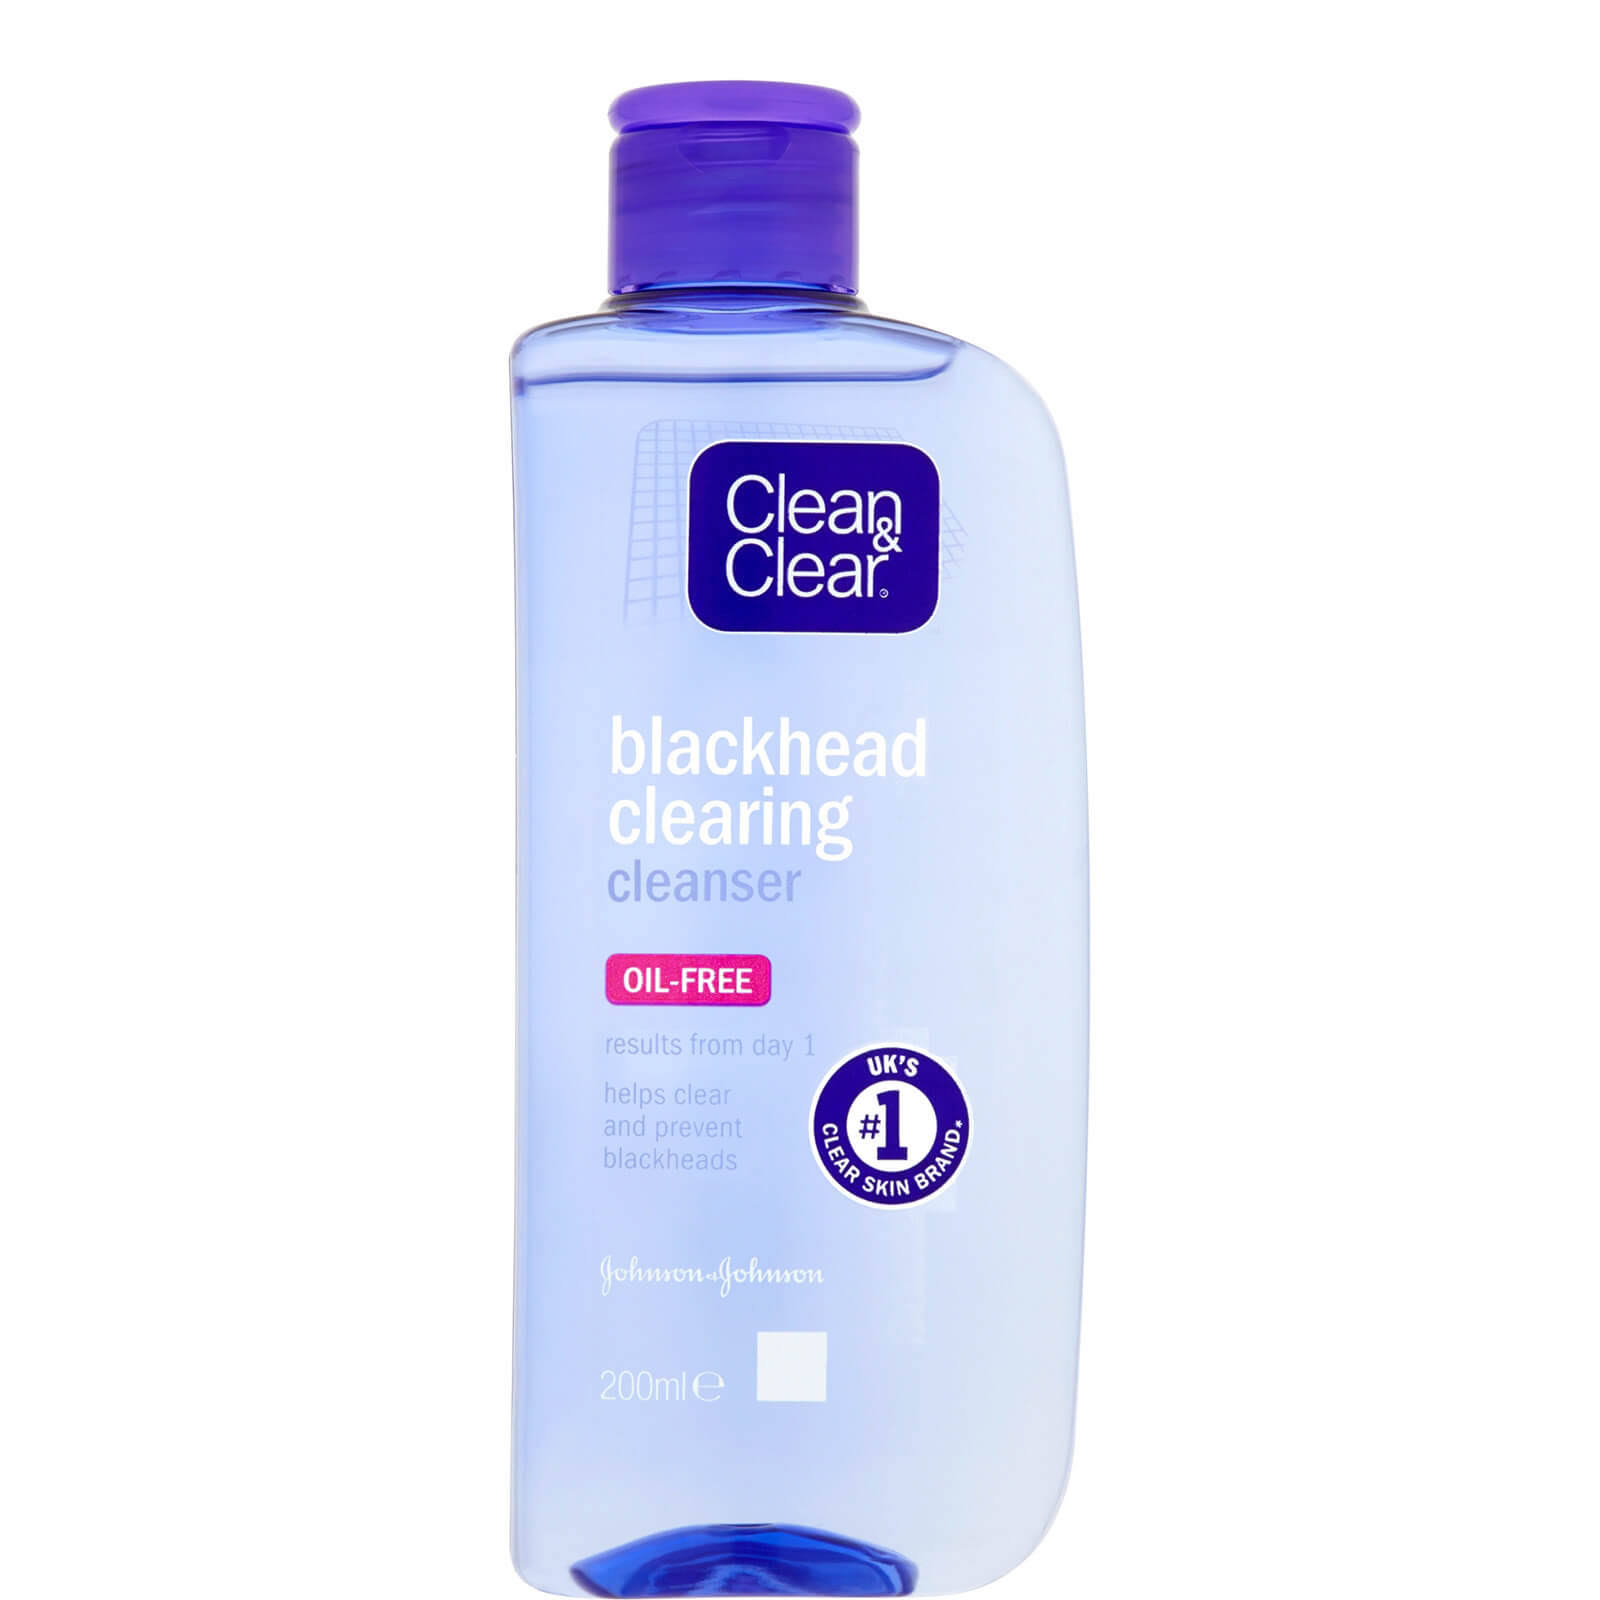 Clean & Clear Blackhead Clearing Cleanser - 200ml